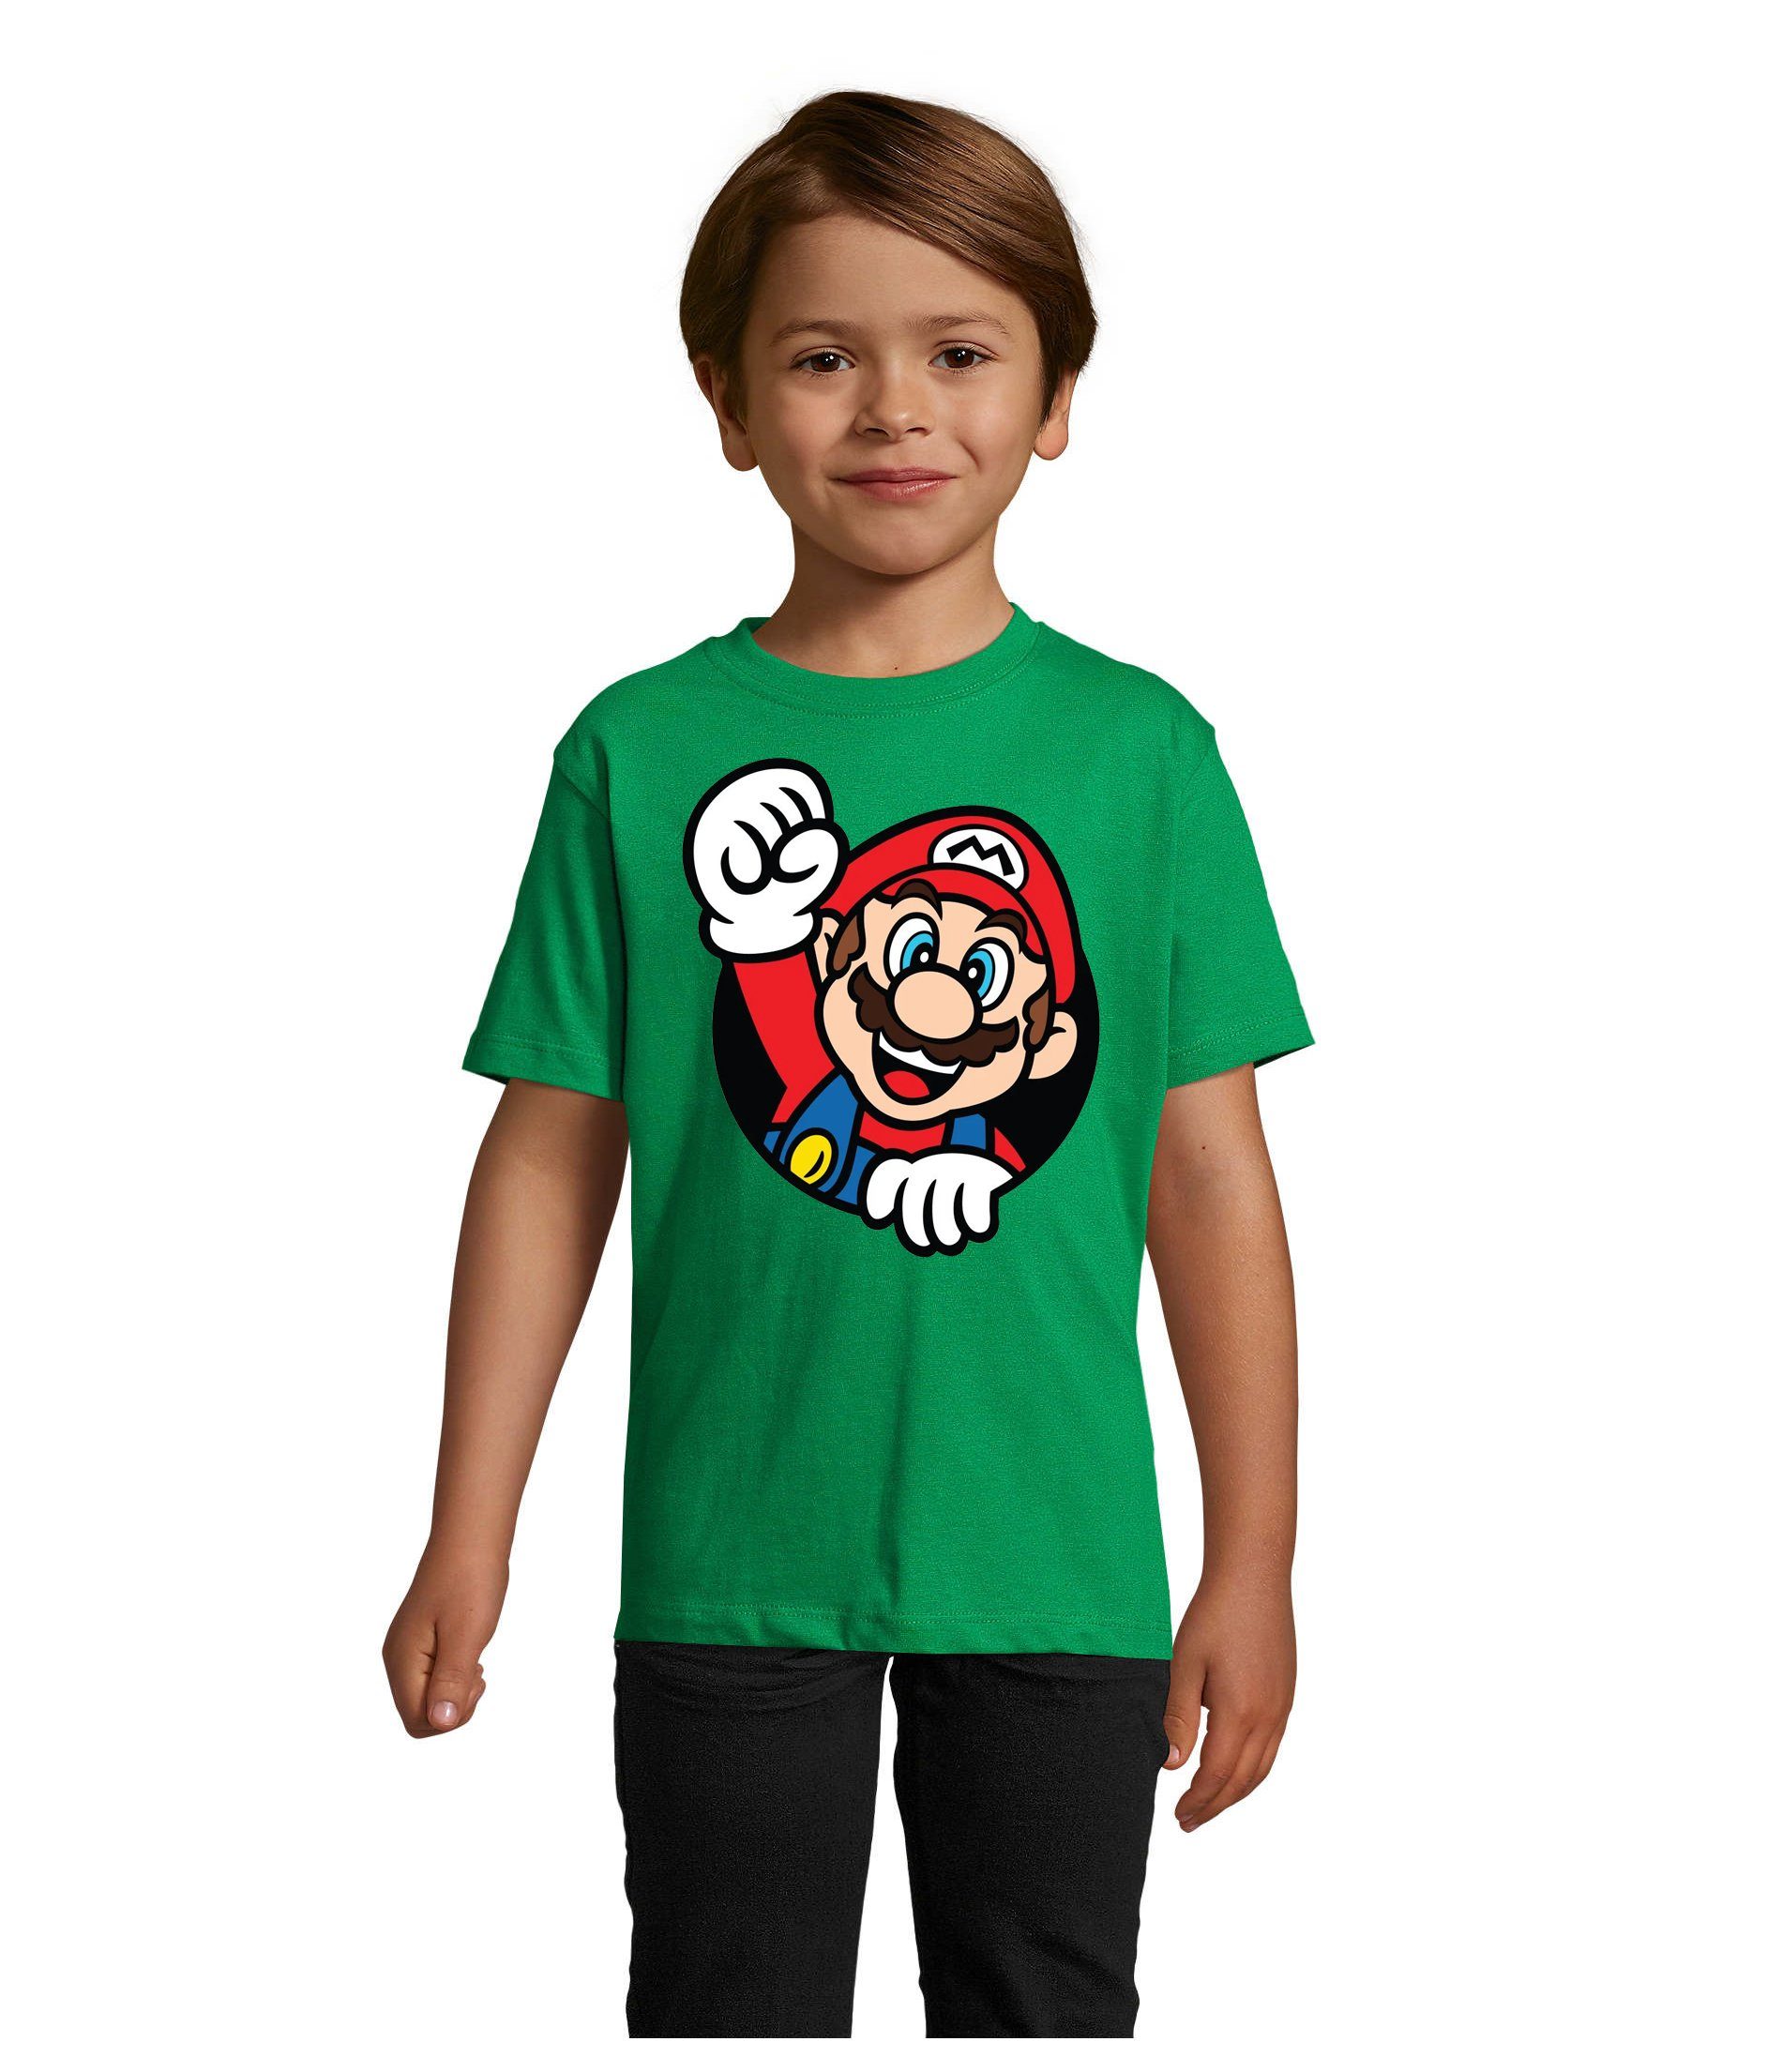 Blondie & Brownie T-Shirt Kinder Super Mario Faust Nerd Konsole Gaming Spiel Nintendo Konsole Grün | T-Shirts